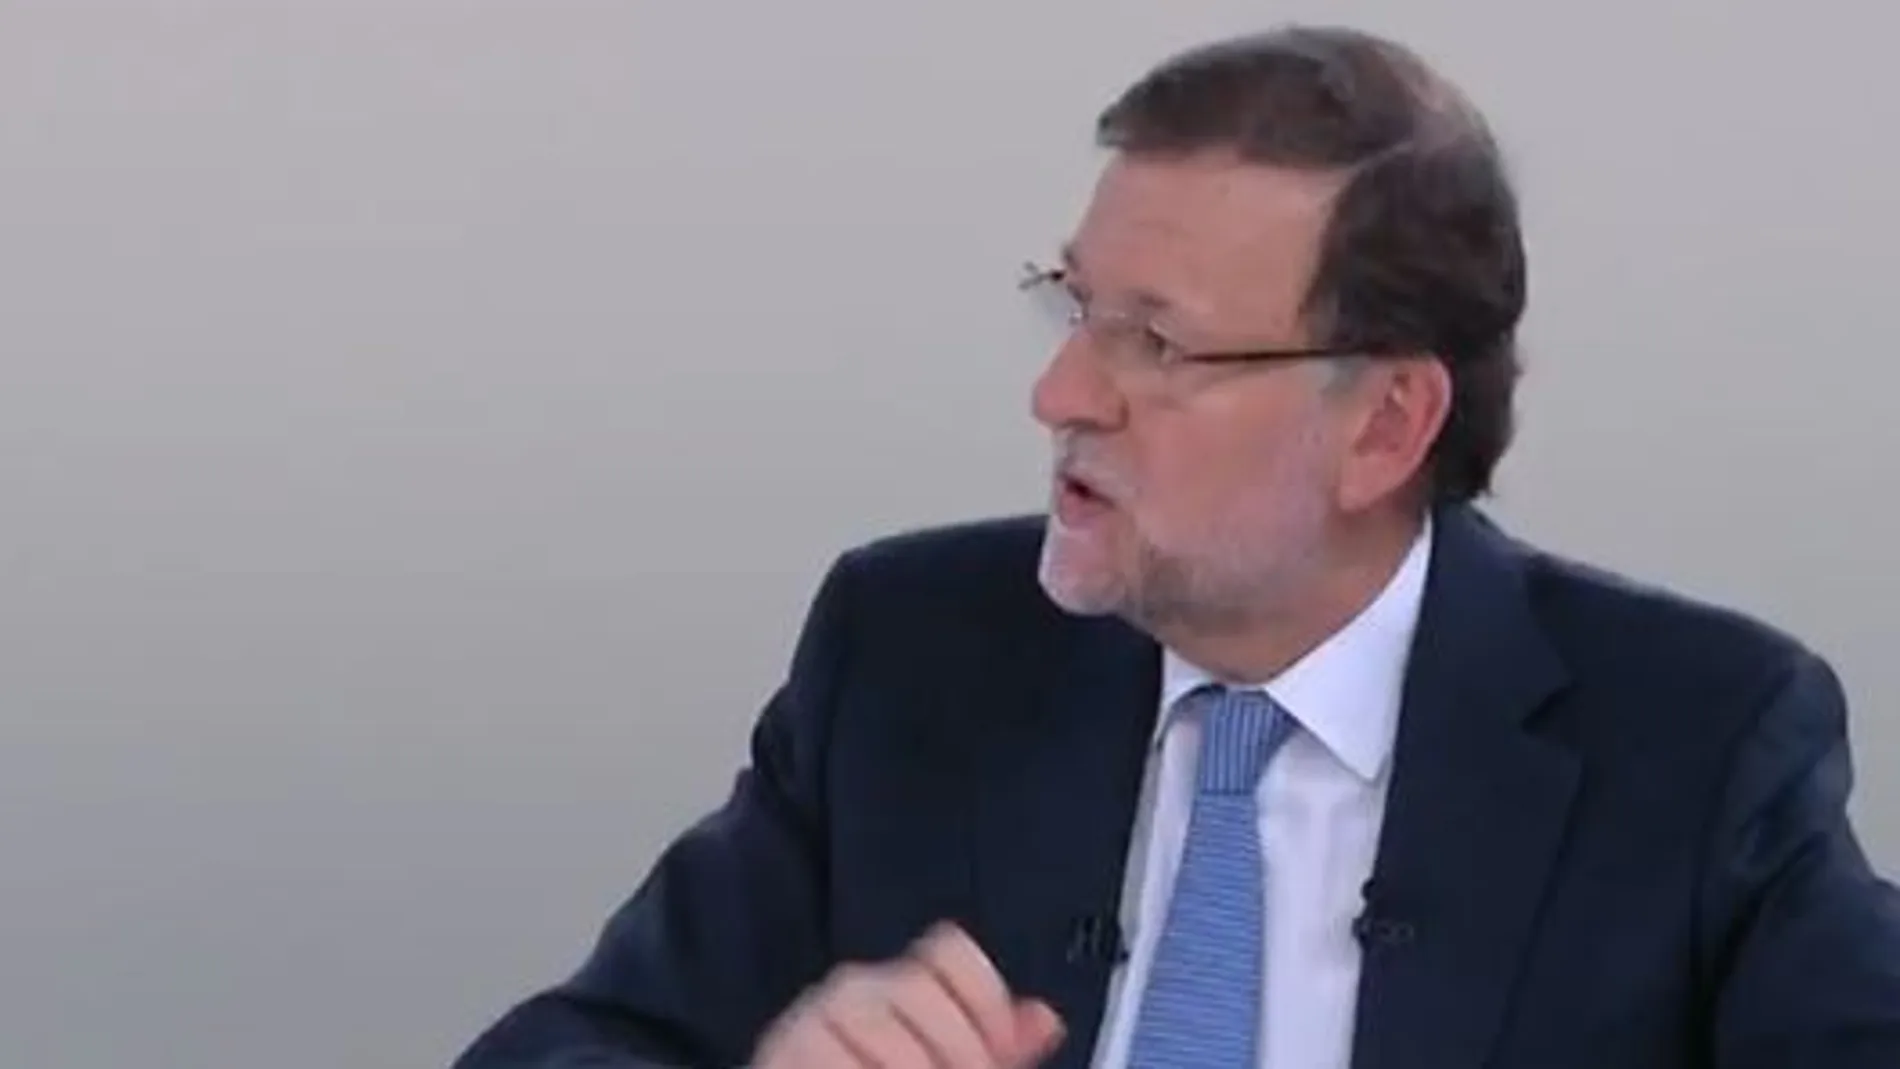 Rajoy: